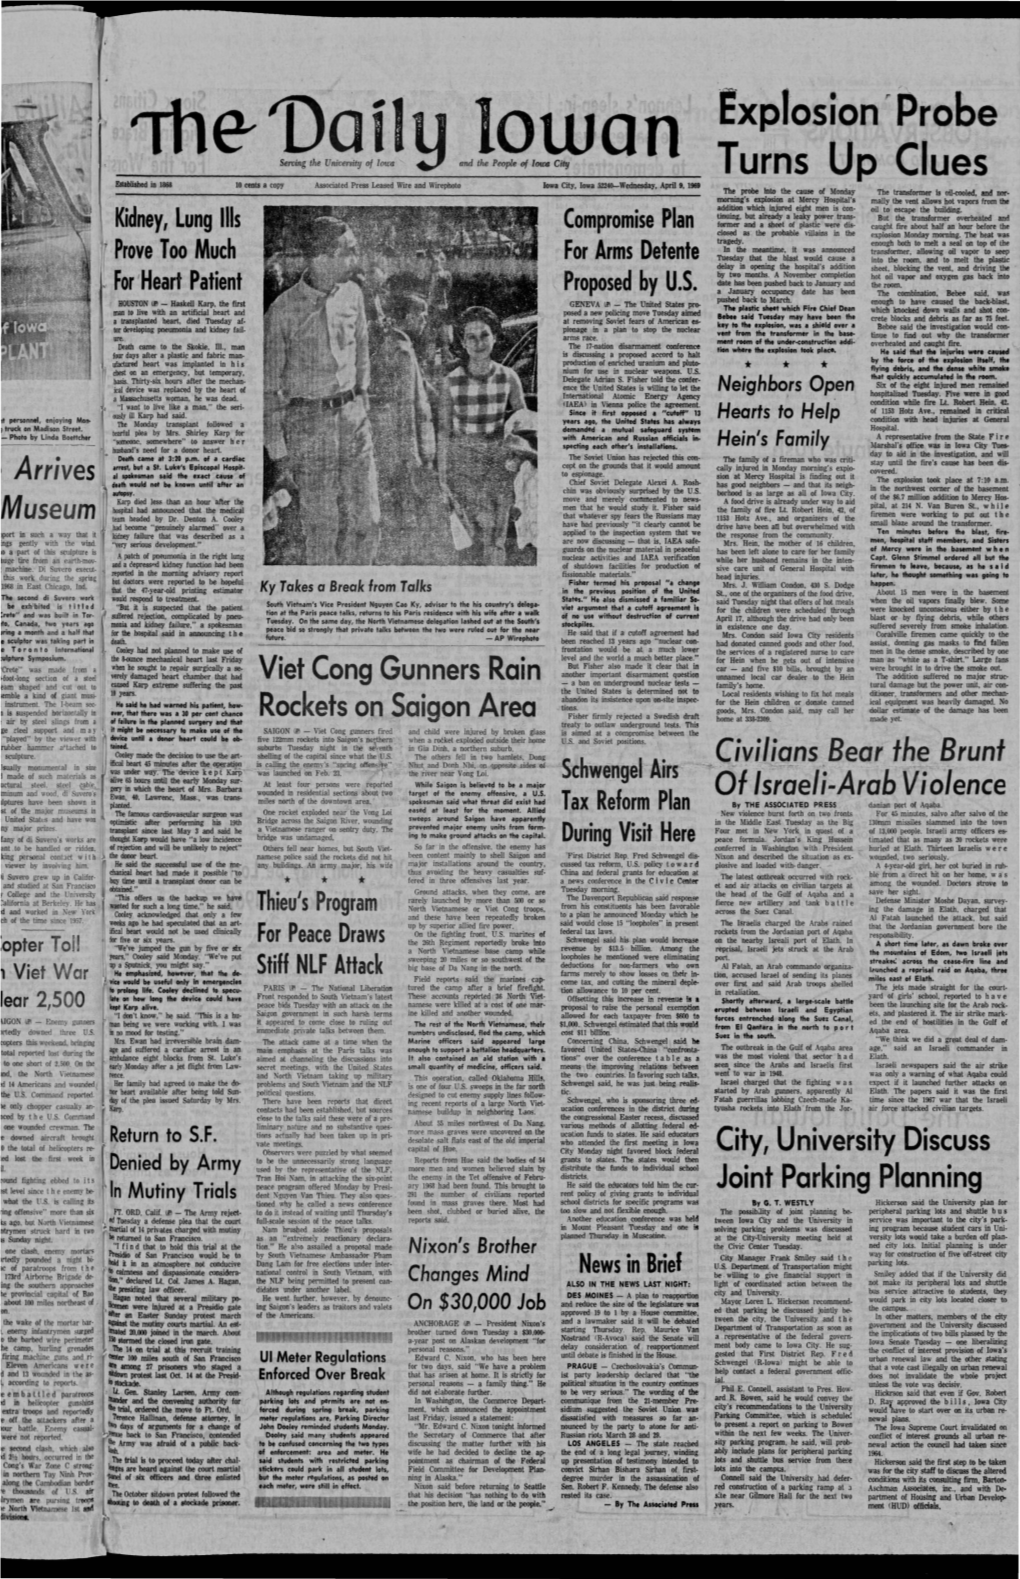 Daily Iowan (Iowa City, Iowa), 1969-04-09